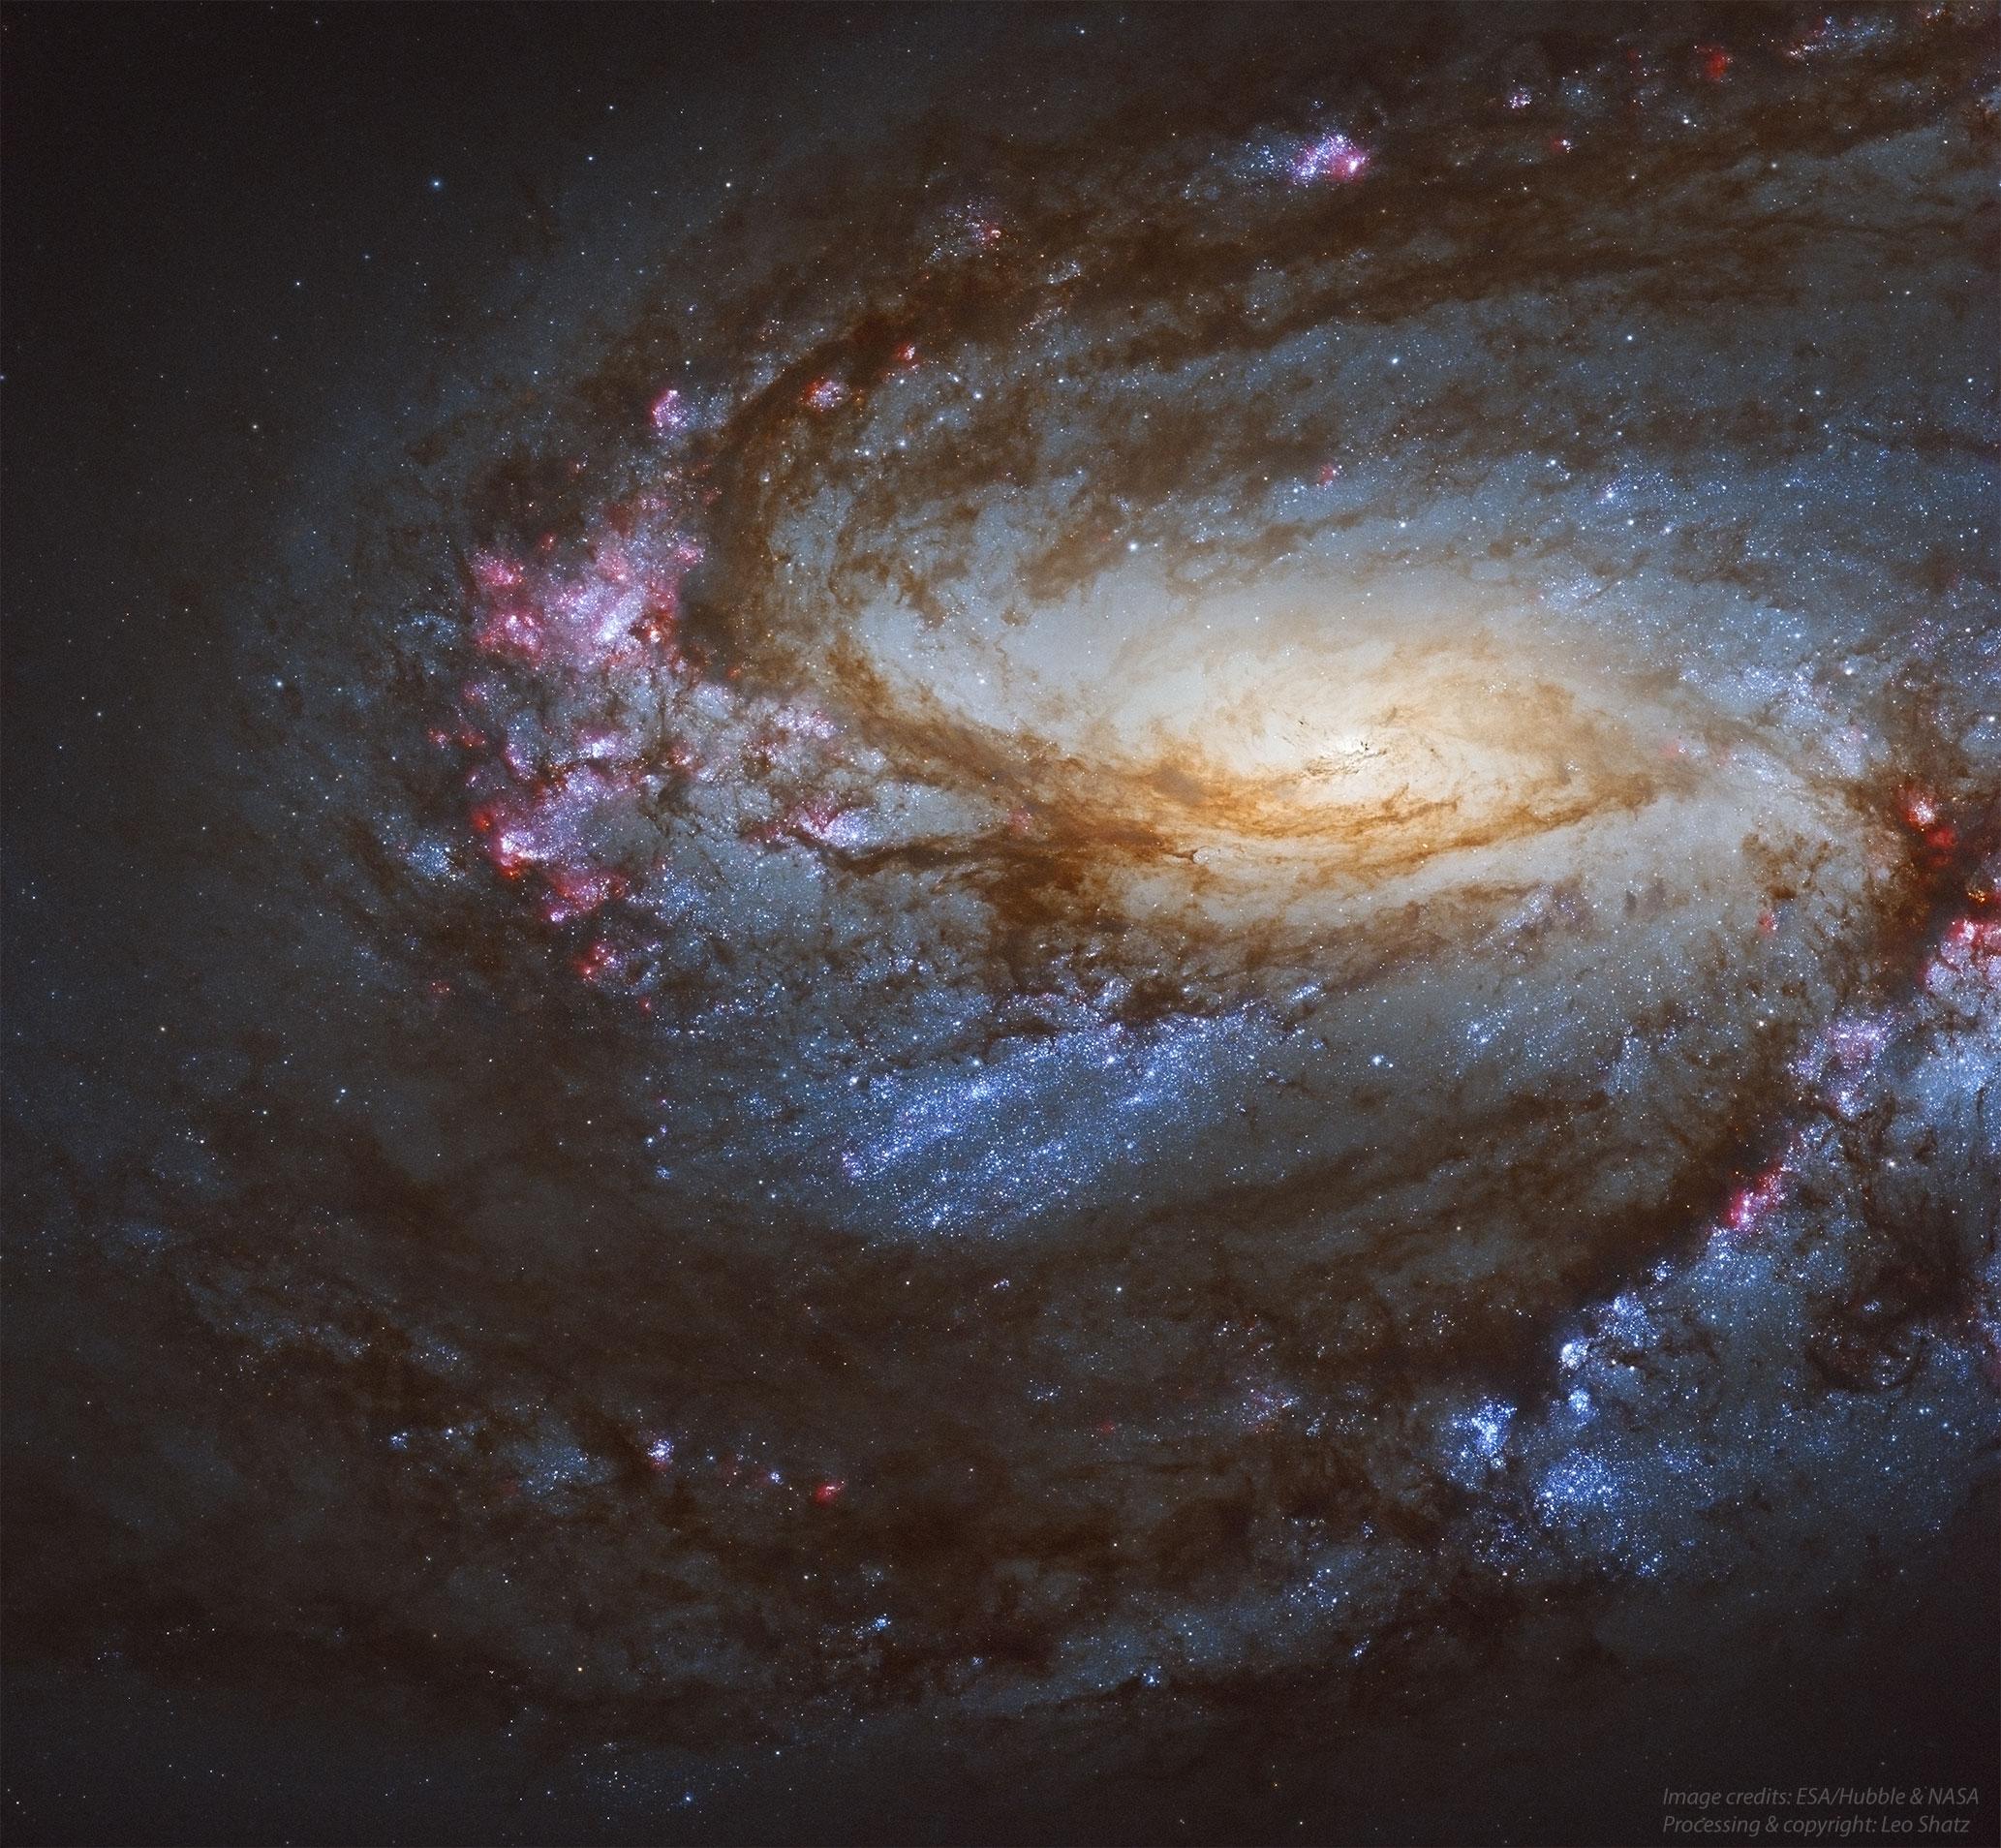 مجرة مِسييه 66 الحلزونية بقرصها الأصفر المتوهج وأذرعها الحلزونيّة التي تتناثر عليها سحب الهيدروجين المتأيّن ورديّة اللون، وكذلك النجوم الزرقاء الساطعة. تظهر كذلك ممرات الغبار الكوني الداكنة.